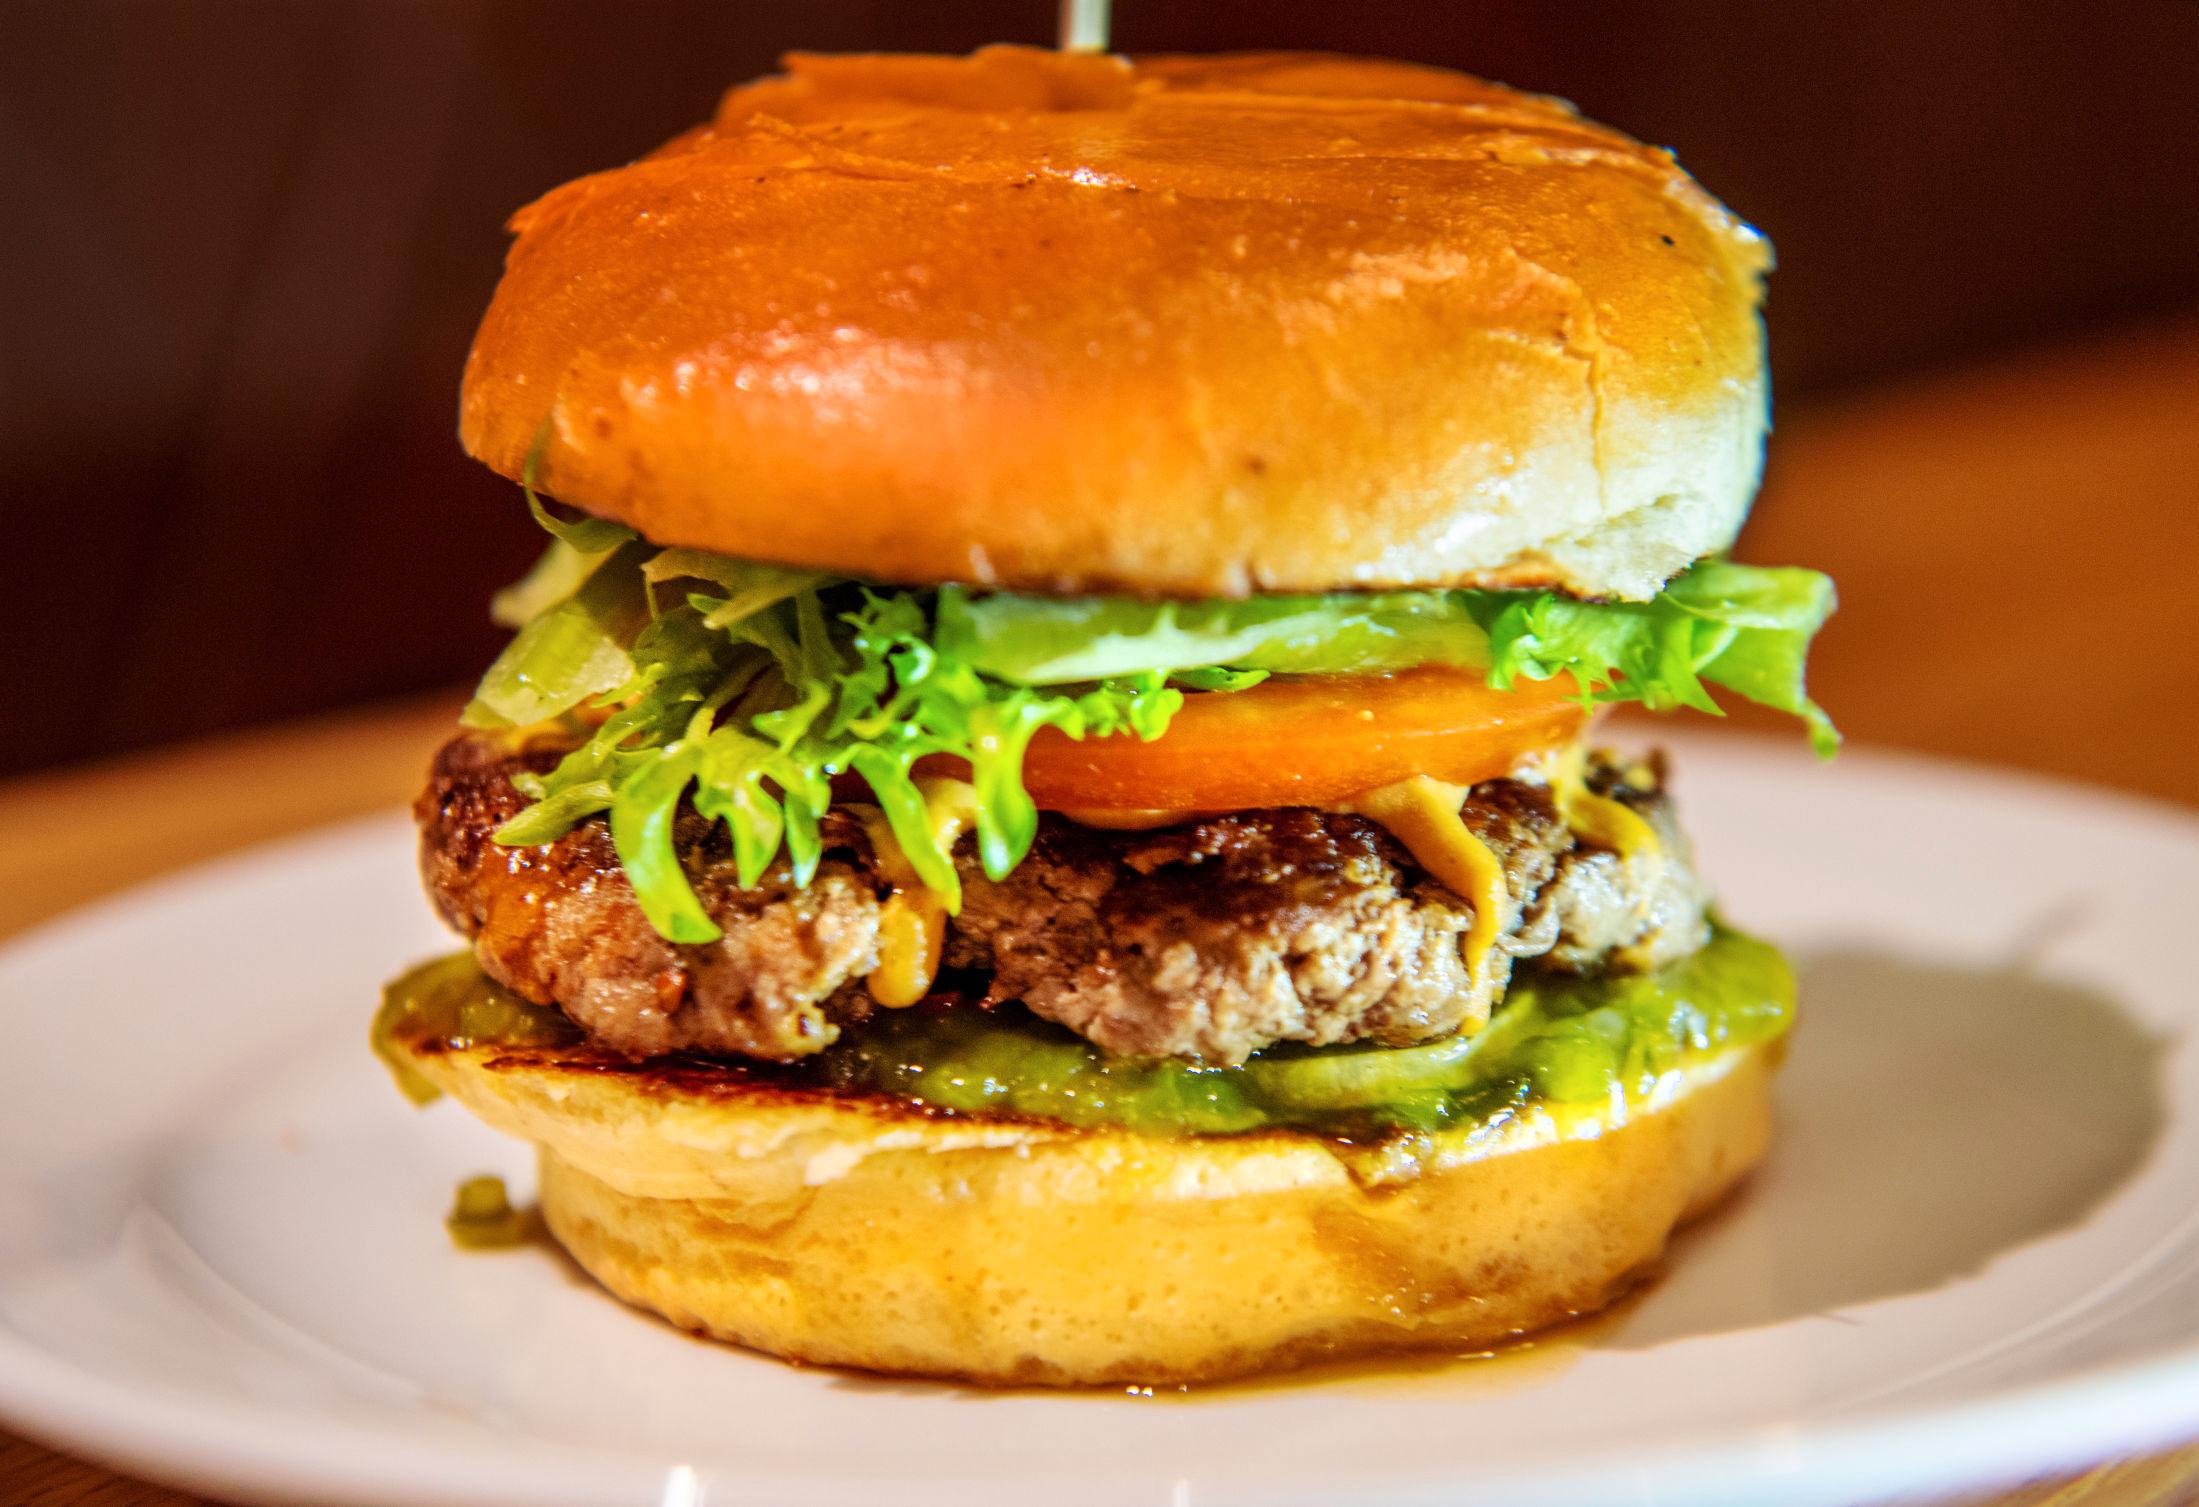 THE ORIGINAL: Den enkleste burgeren på Johnny Rockets er som en forfinet McFeast, skriver restaurantanmelderen. Foto: Helge Mikalsen/VG